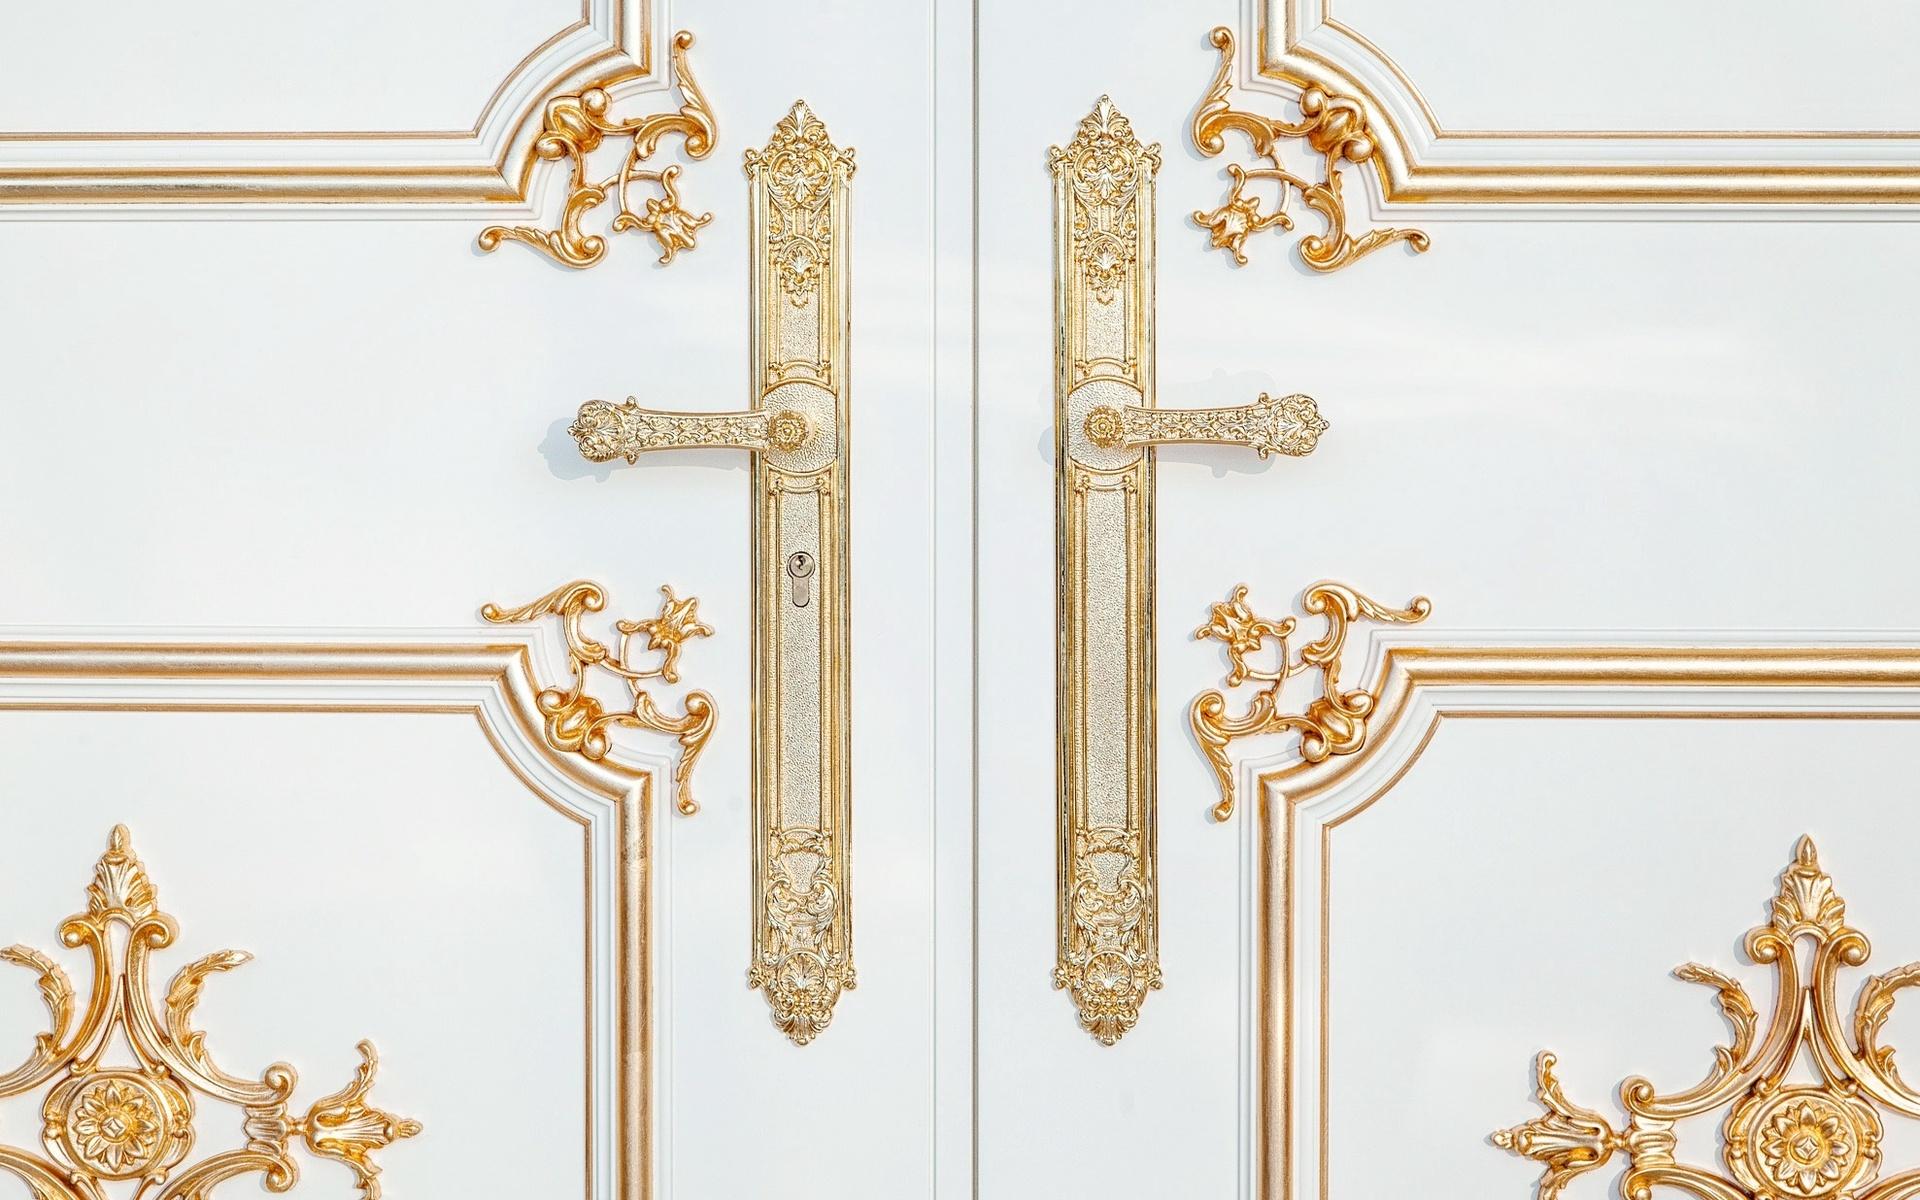 Att ägaren älskar guld märks överallt. Då bland annat handtagen och dekorationen på dörrarna är guldfärgade.